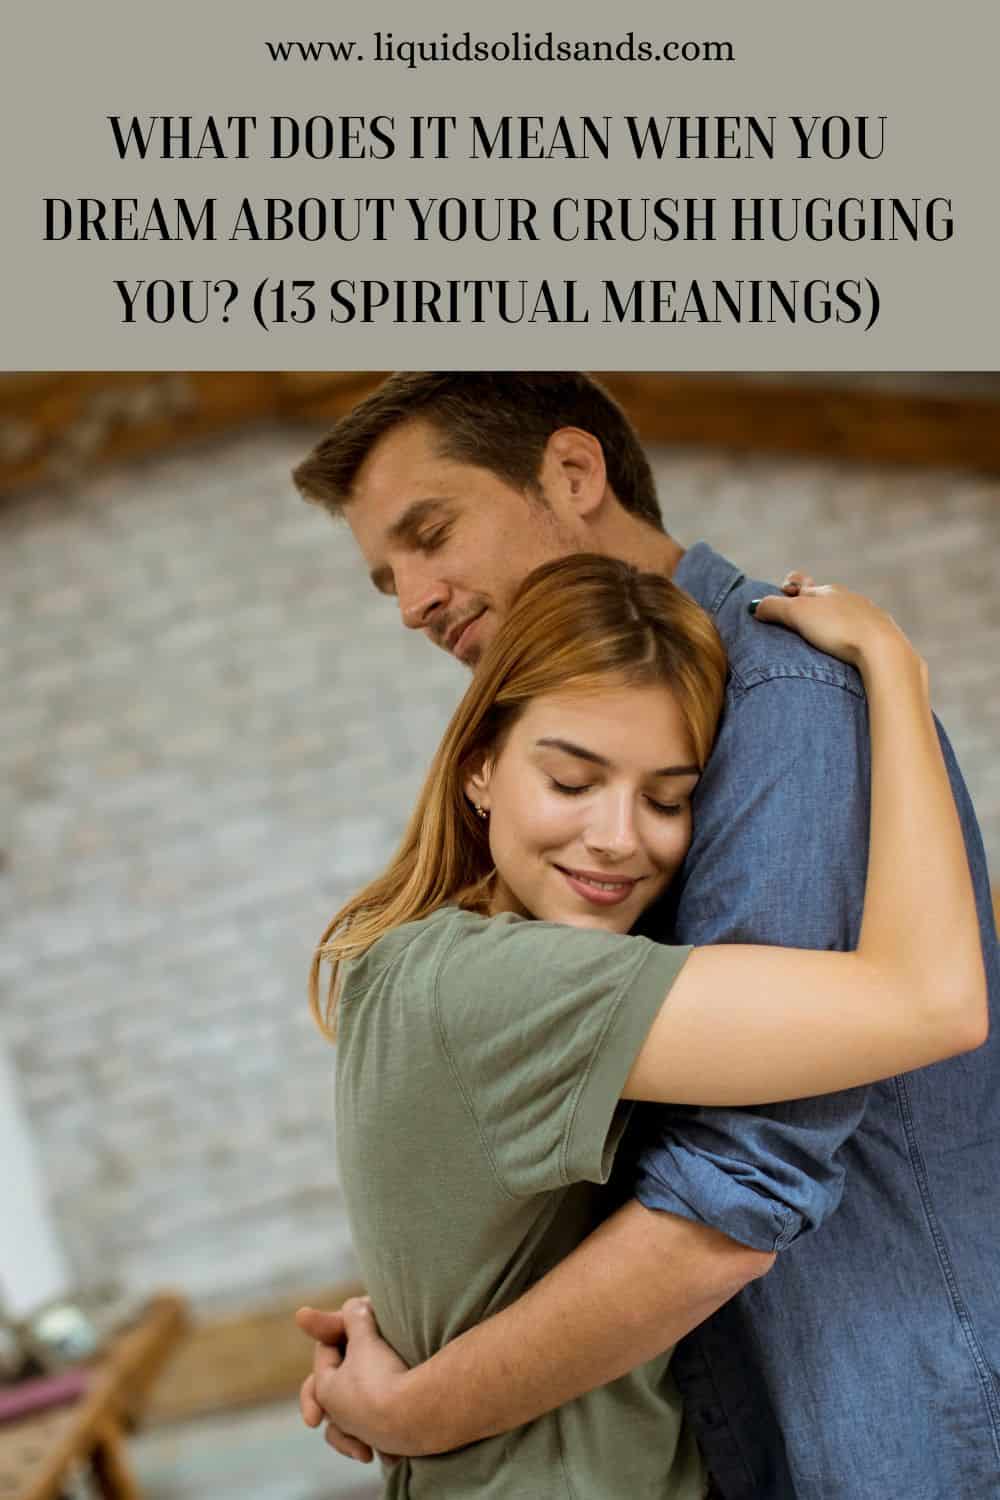  Mit jelent, ha azt álmodod, hogy a szerelmed megölel? (13 spirituális jelentés)